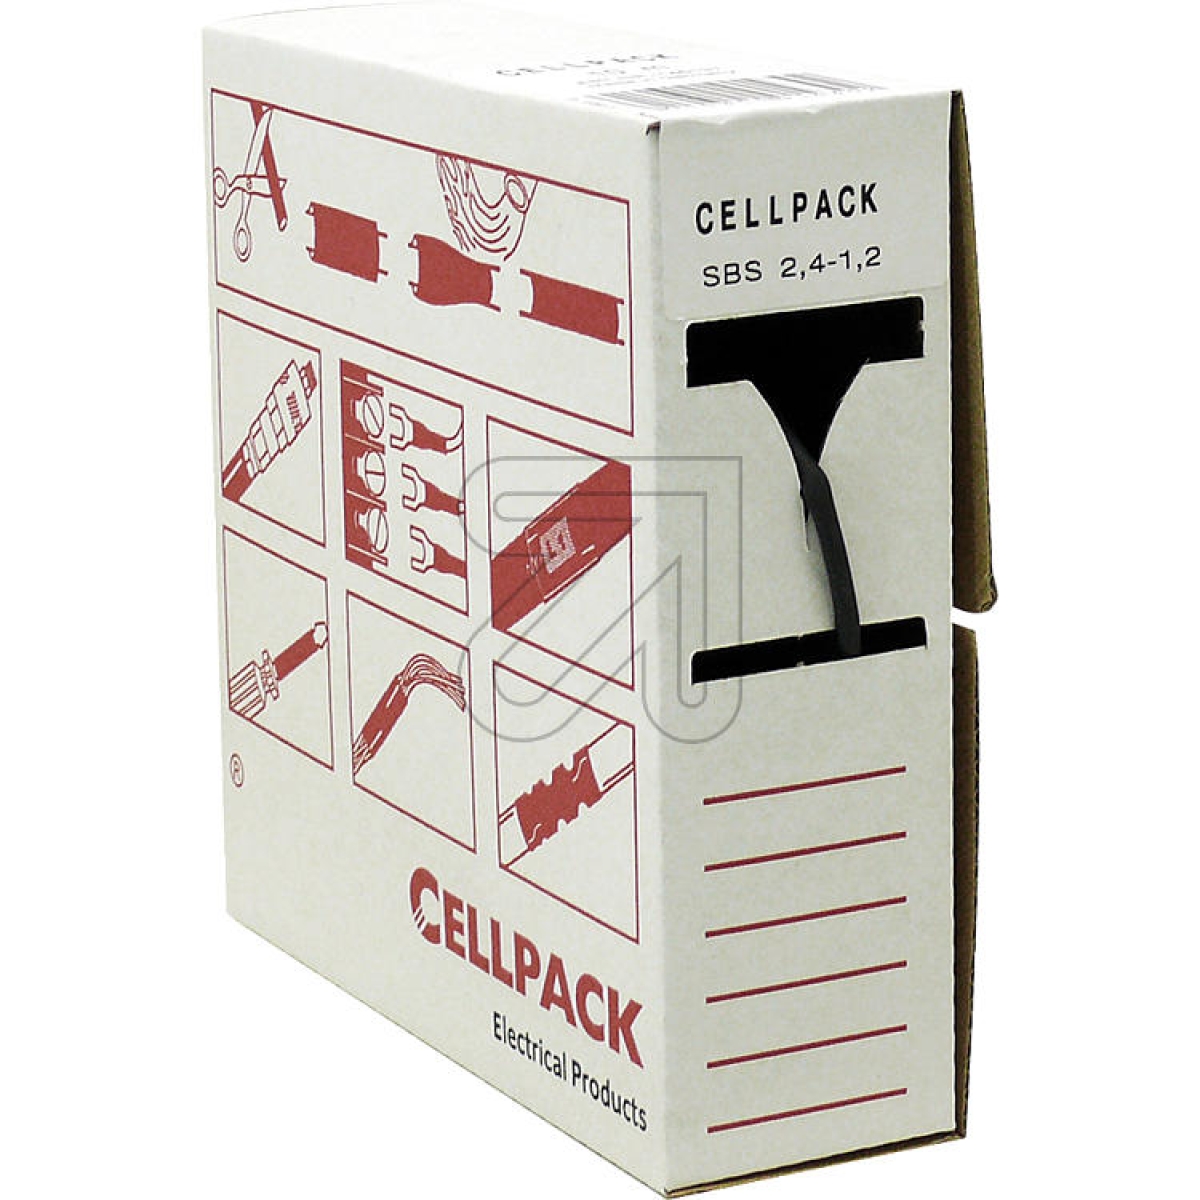 CellpackShrink tubing 2.4-1.2, content 10m